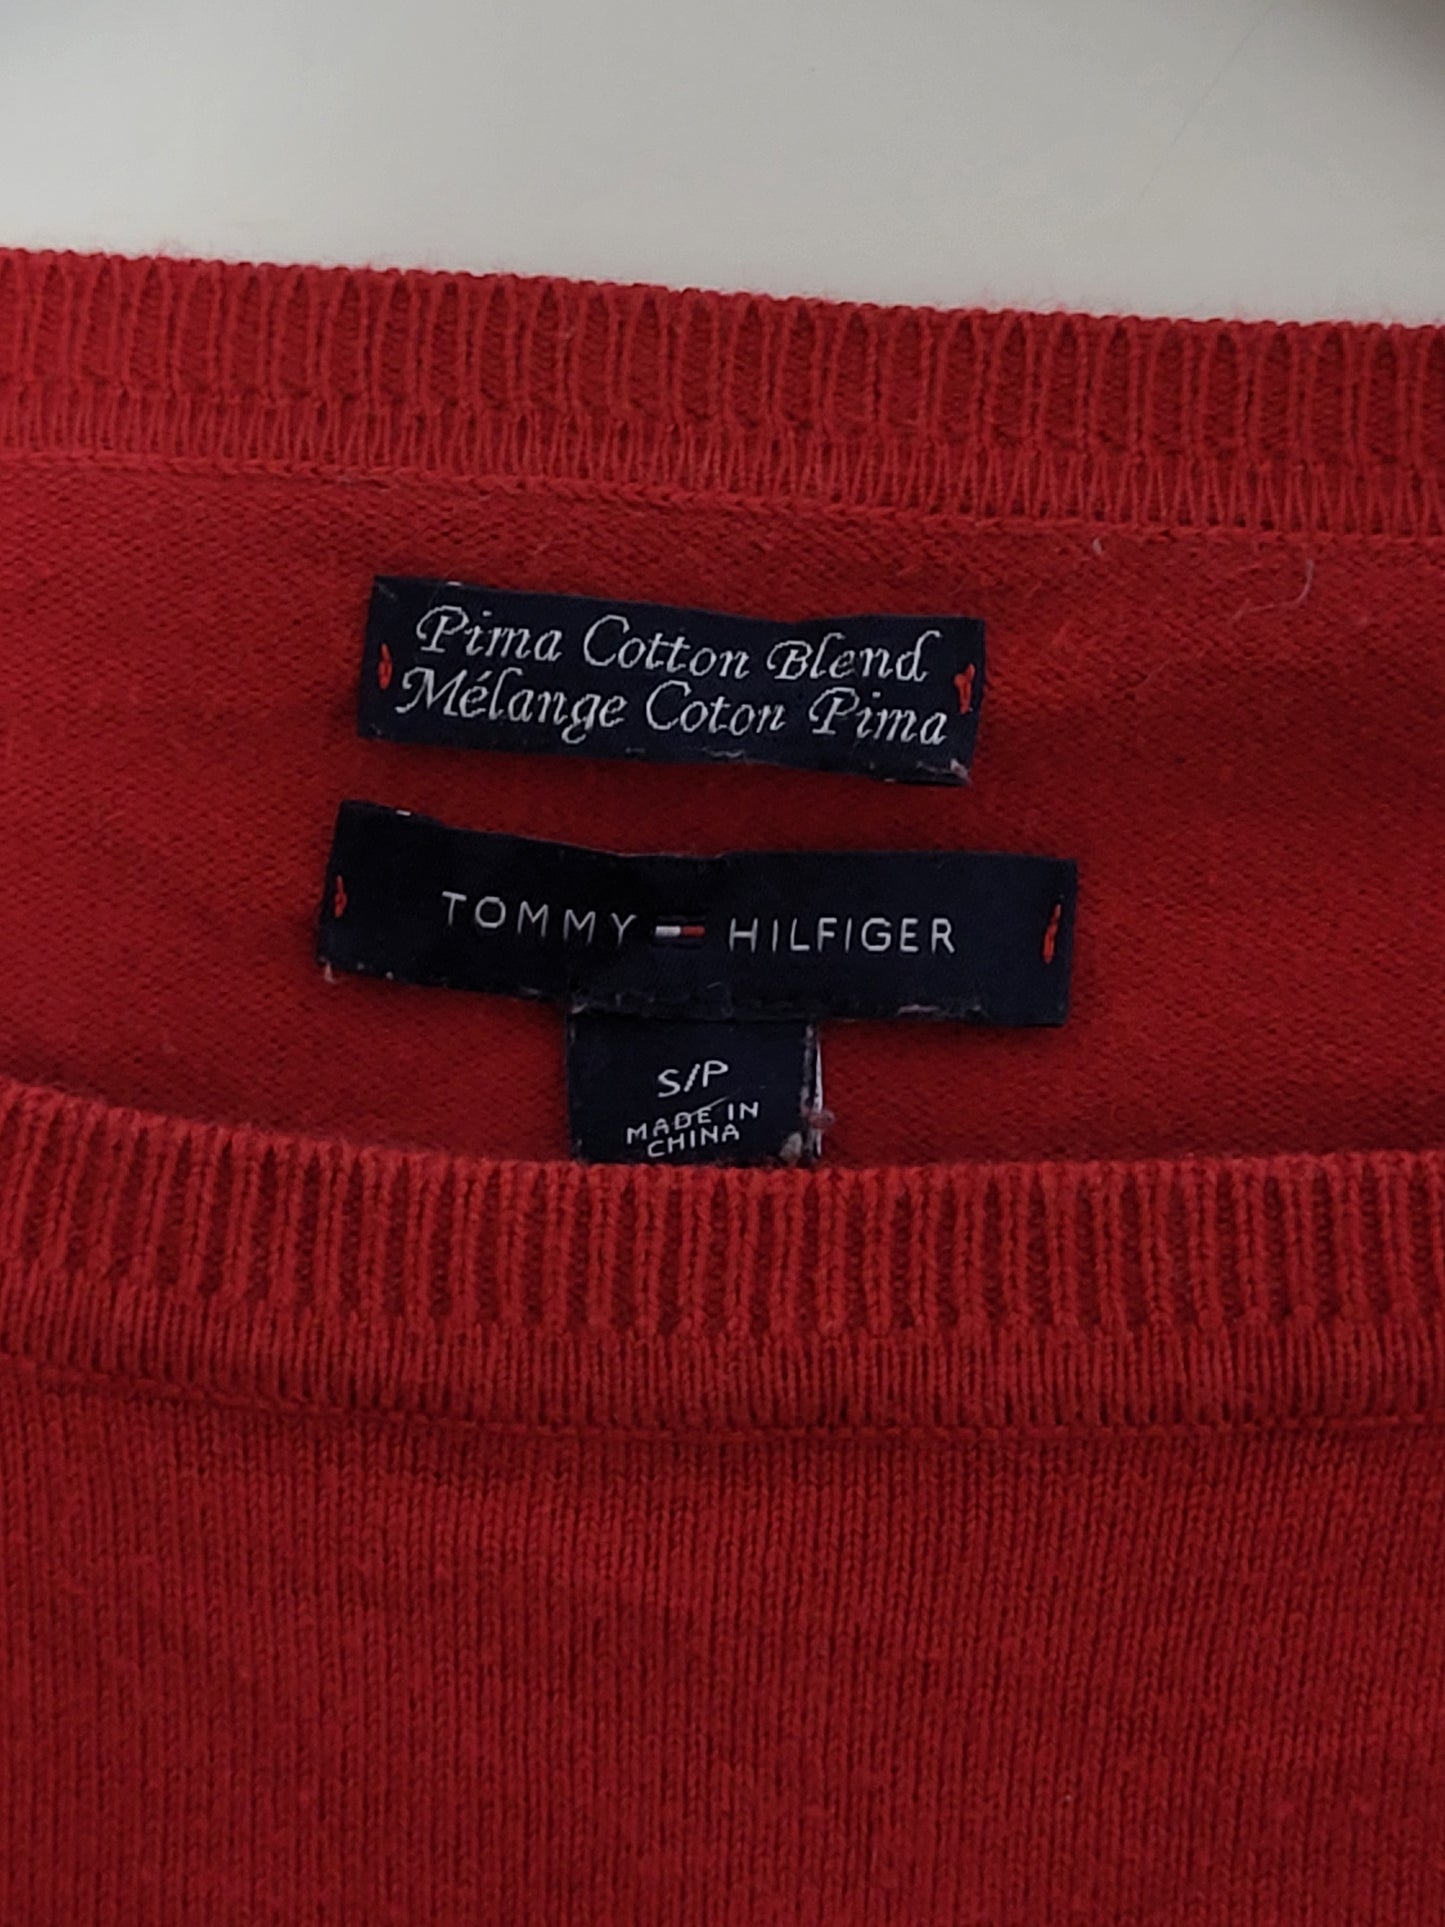 Tommy Hilfiger - Pullover - Klassisch - Rot - Kinder - S